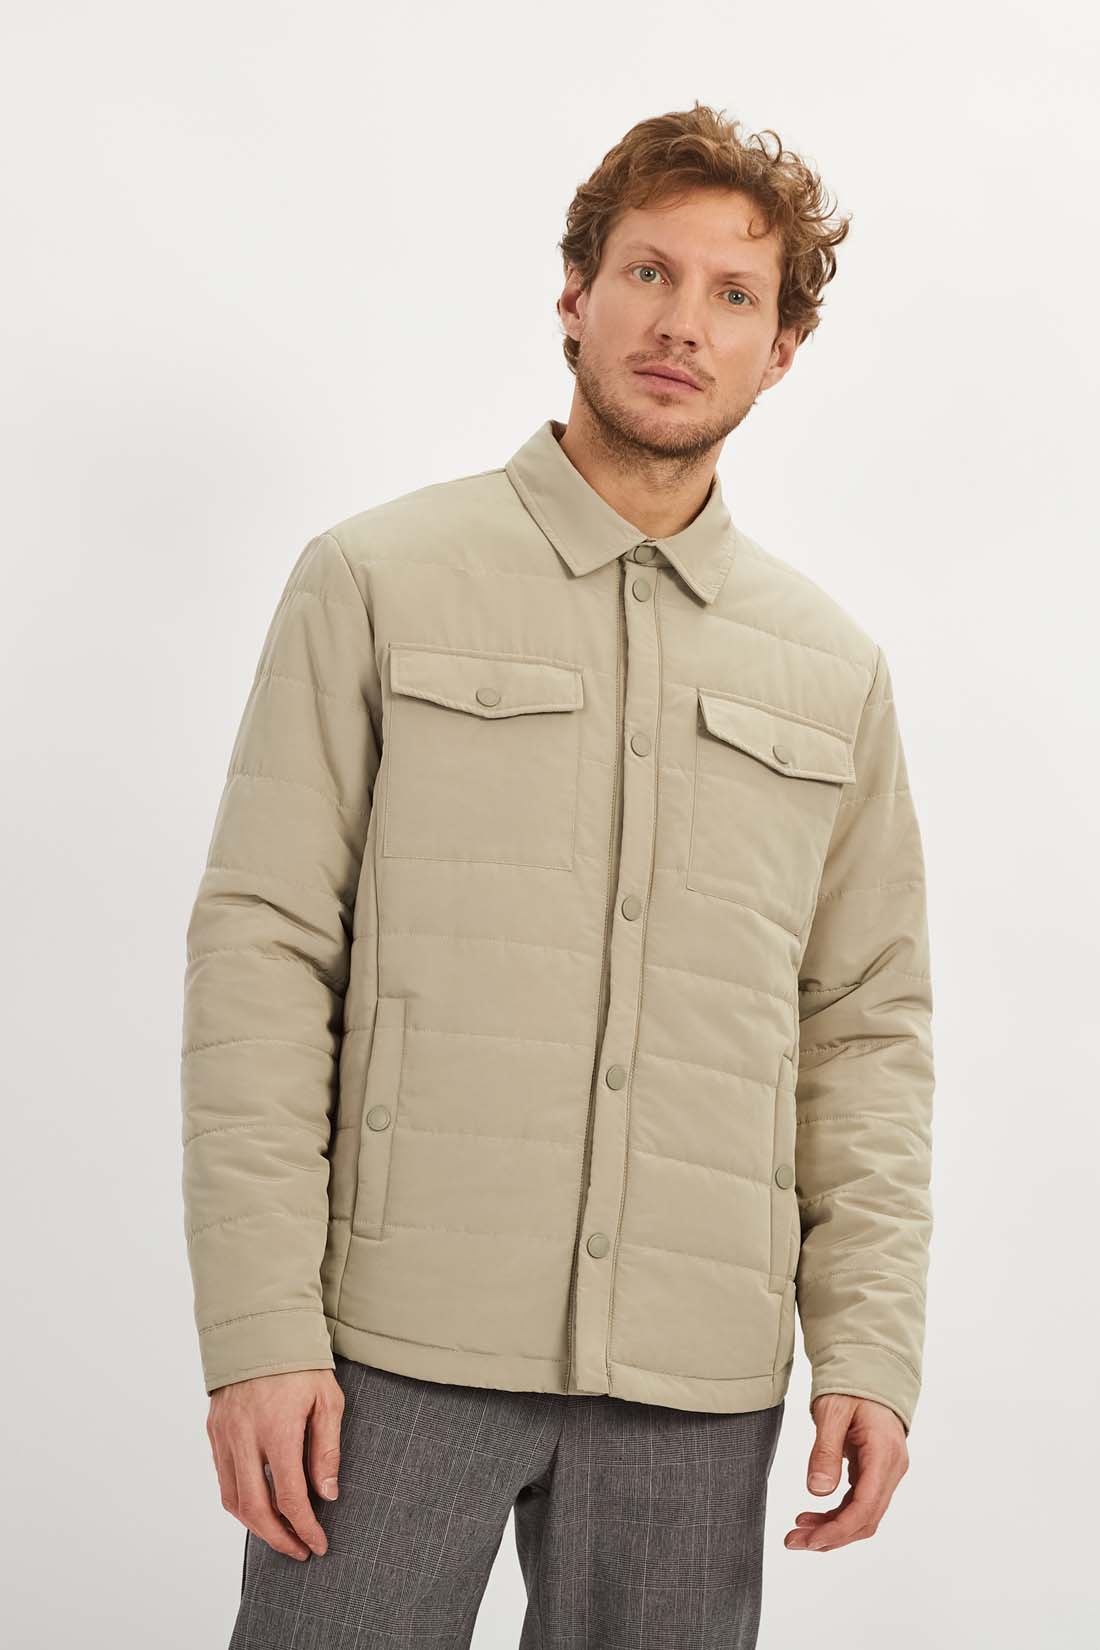 Куртка (арт. baon B5322007), размер M, цвет бежевый Куртка (арт. baon B5322007) - фото 1